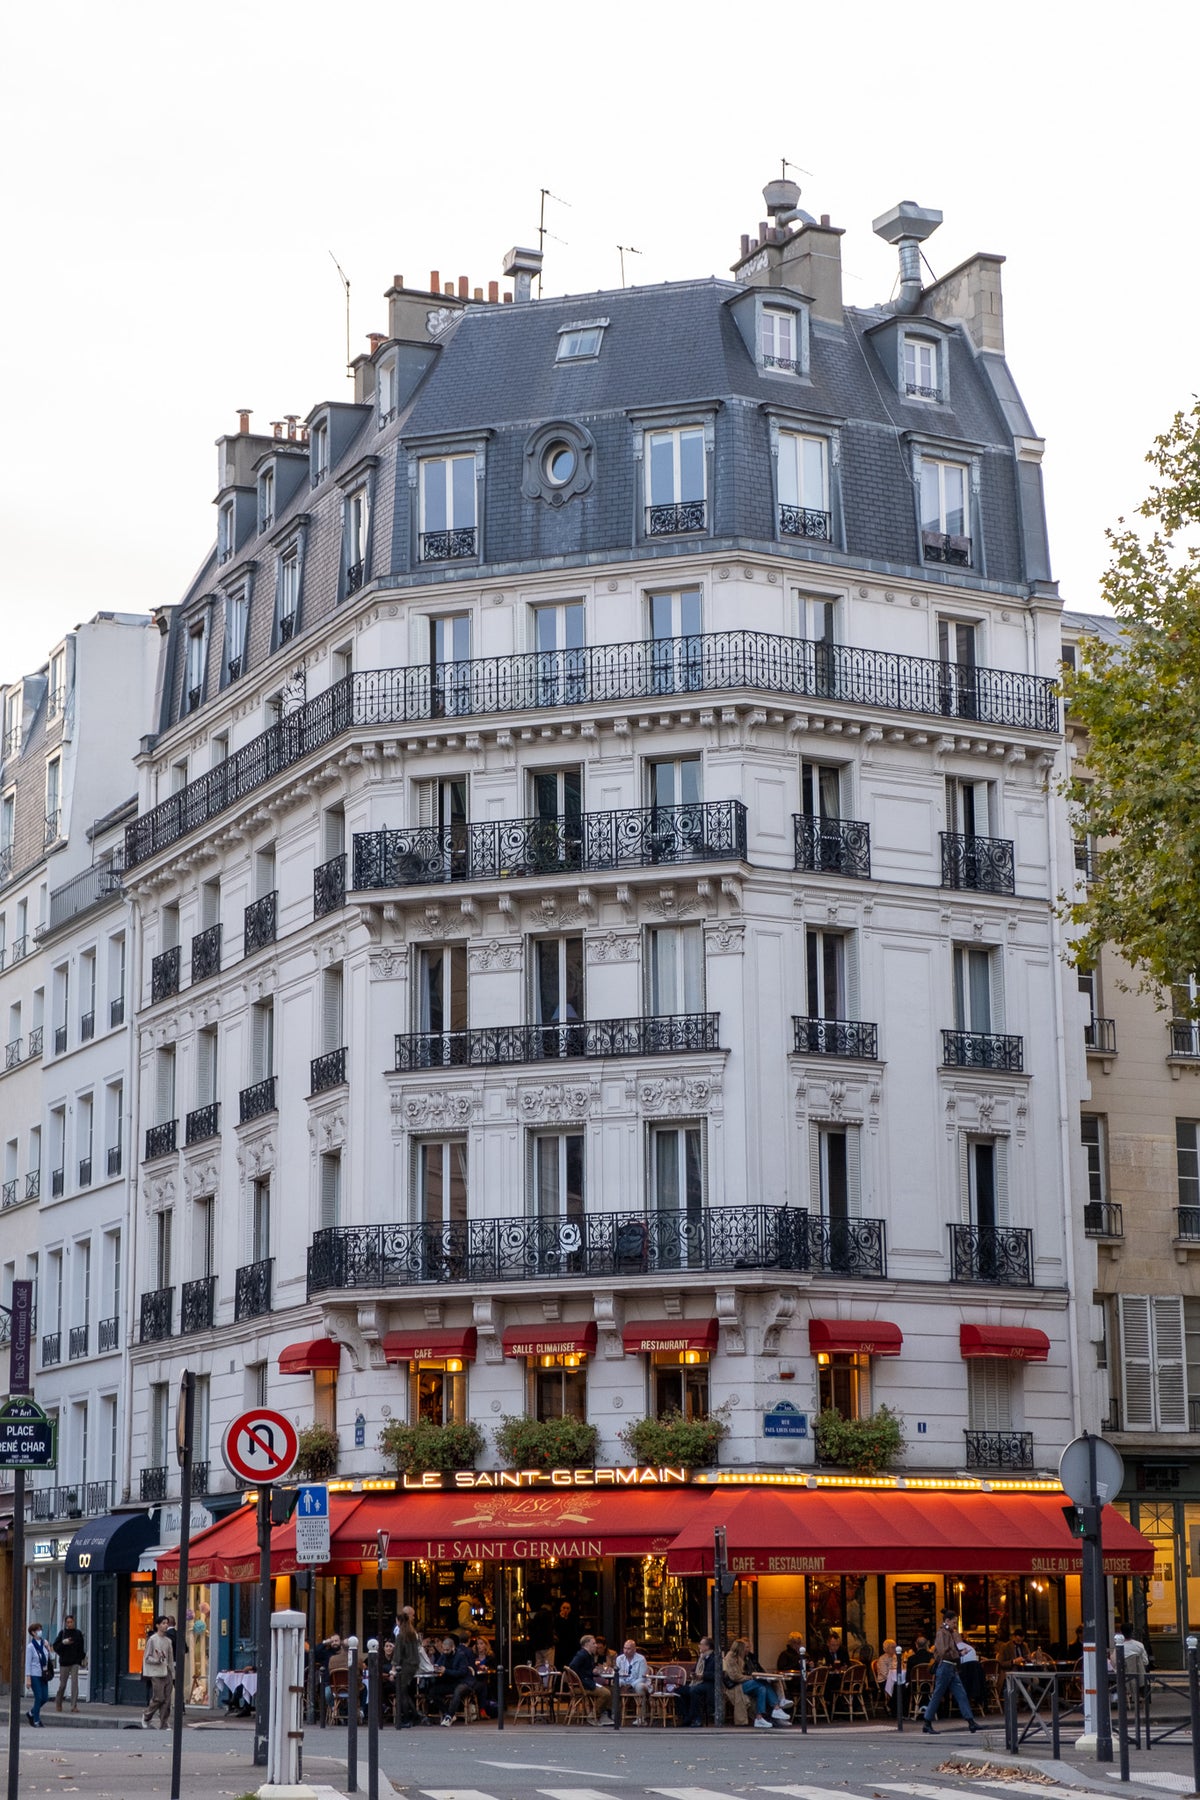 Le Saint-Germain Café in Paris